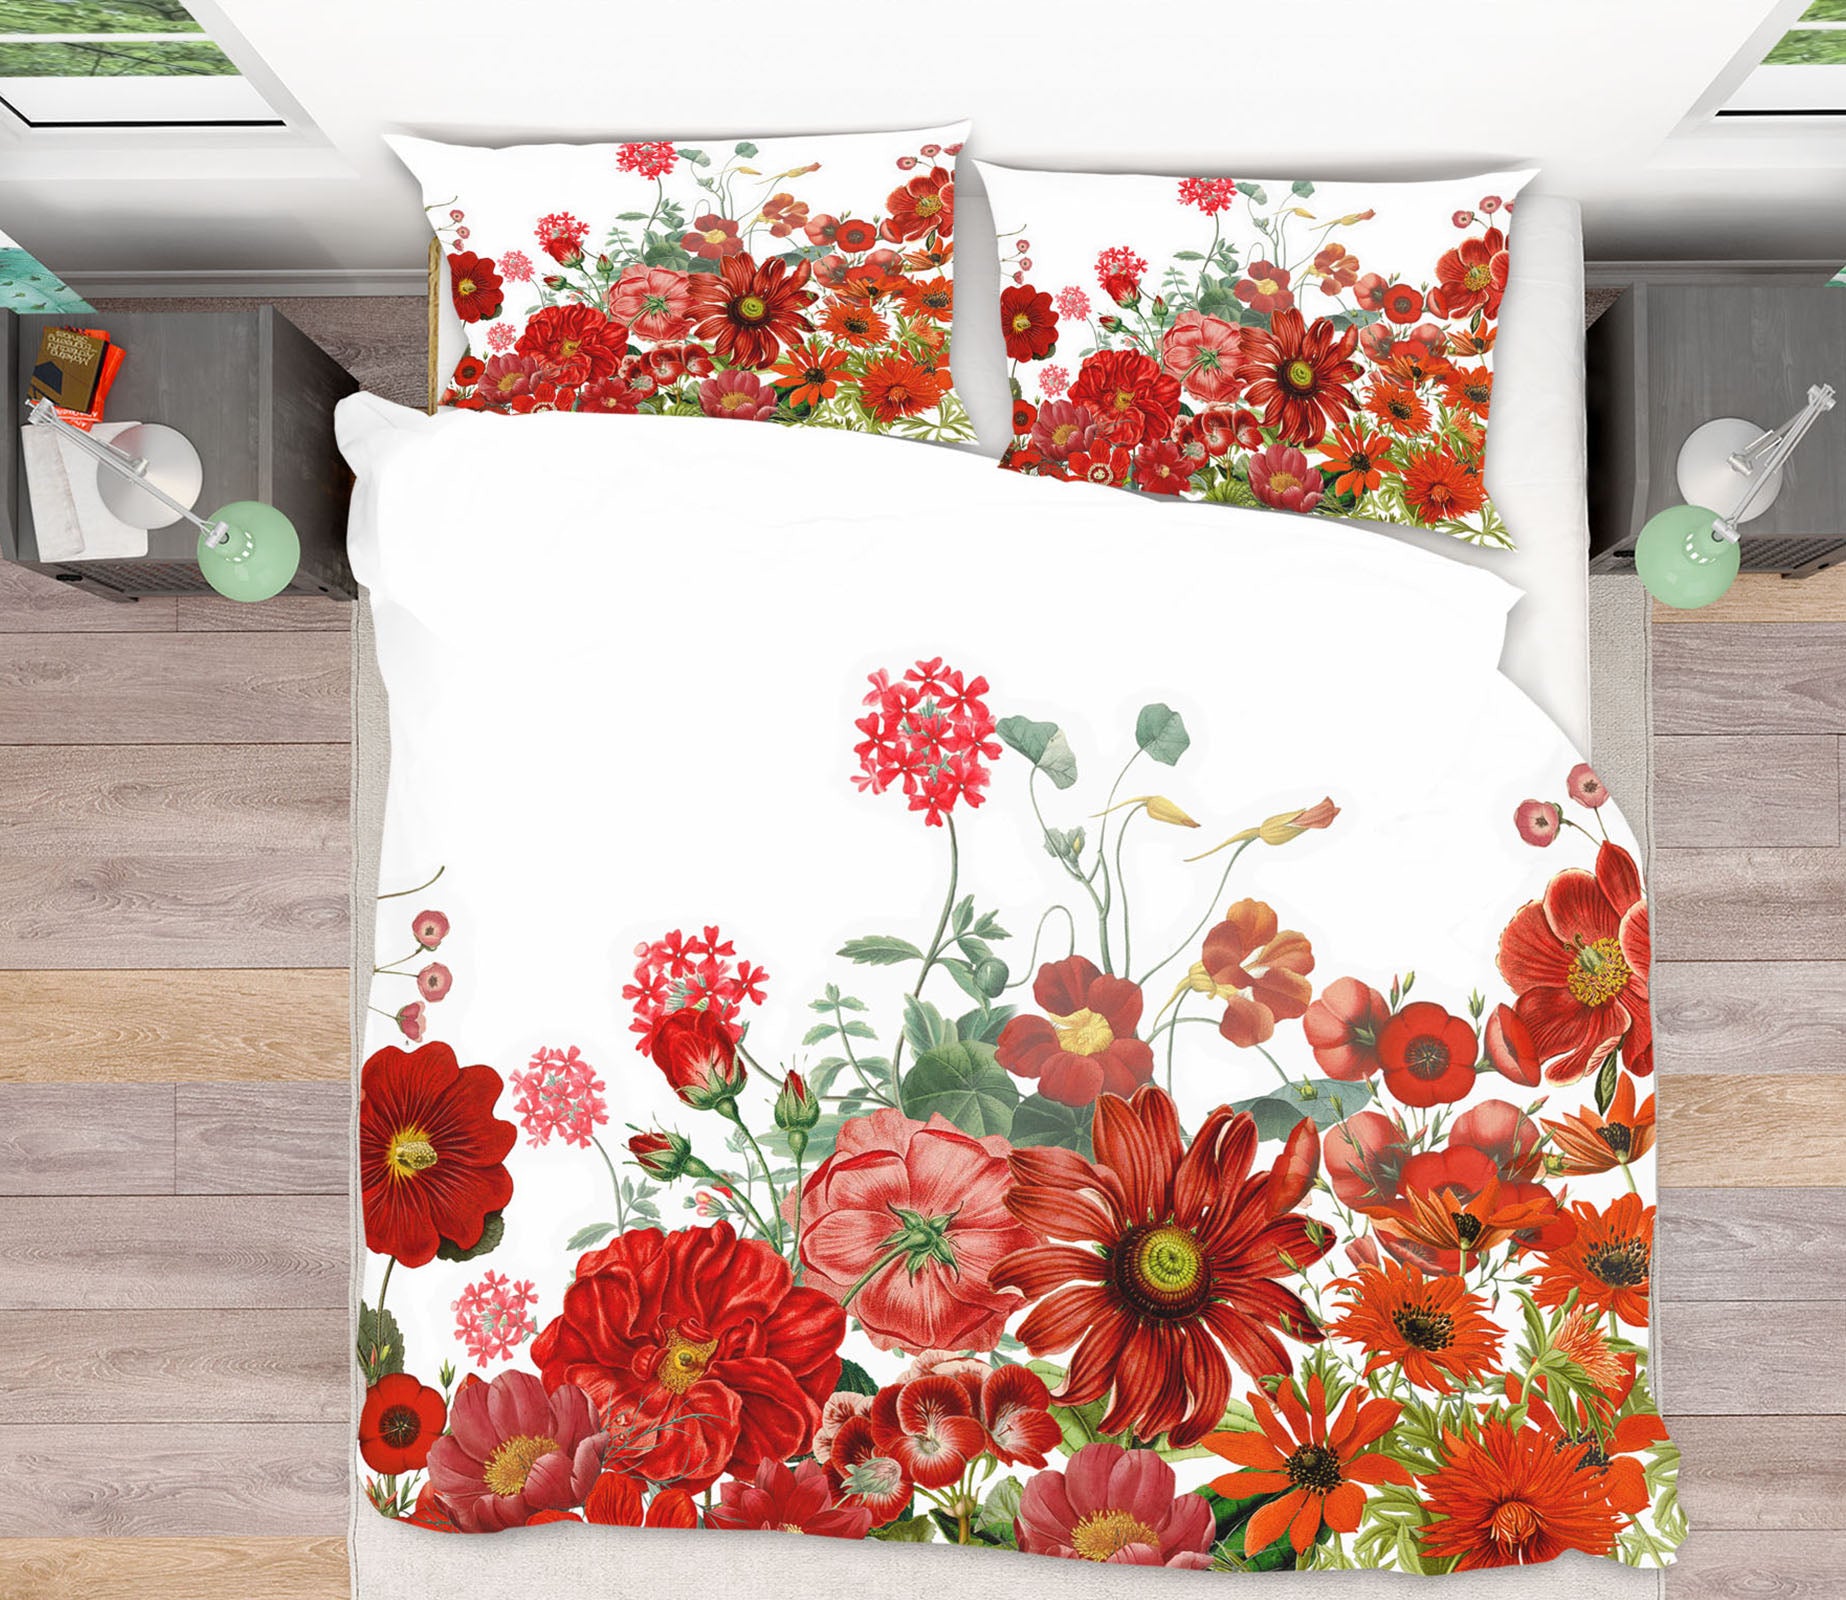 3D Red Flower Field 045 Uta Naumann Bedding Bed Pillowcases Quilt